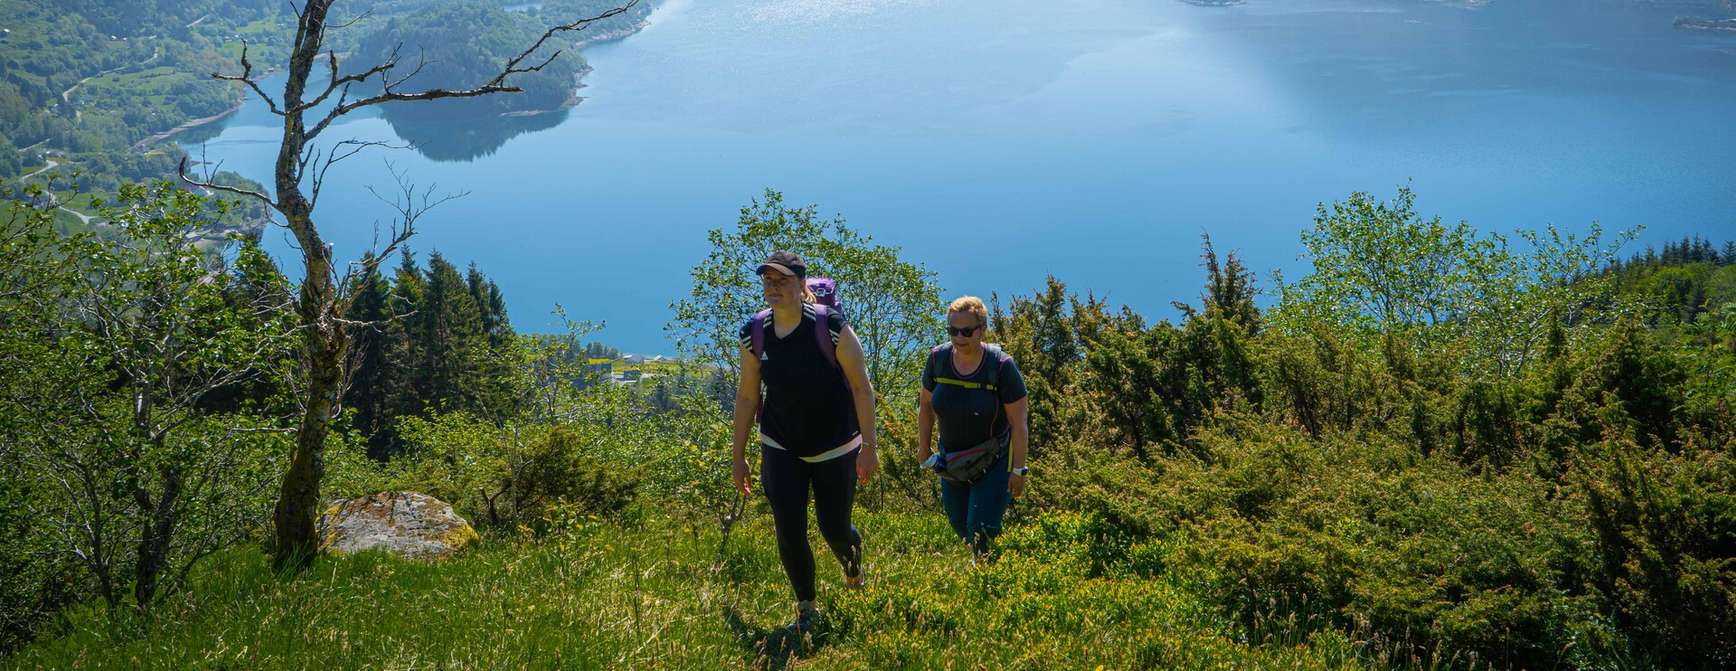 To damer på tur i grønne omgivelser med fjord og fjeld i baggrunden.